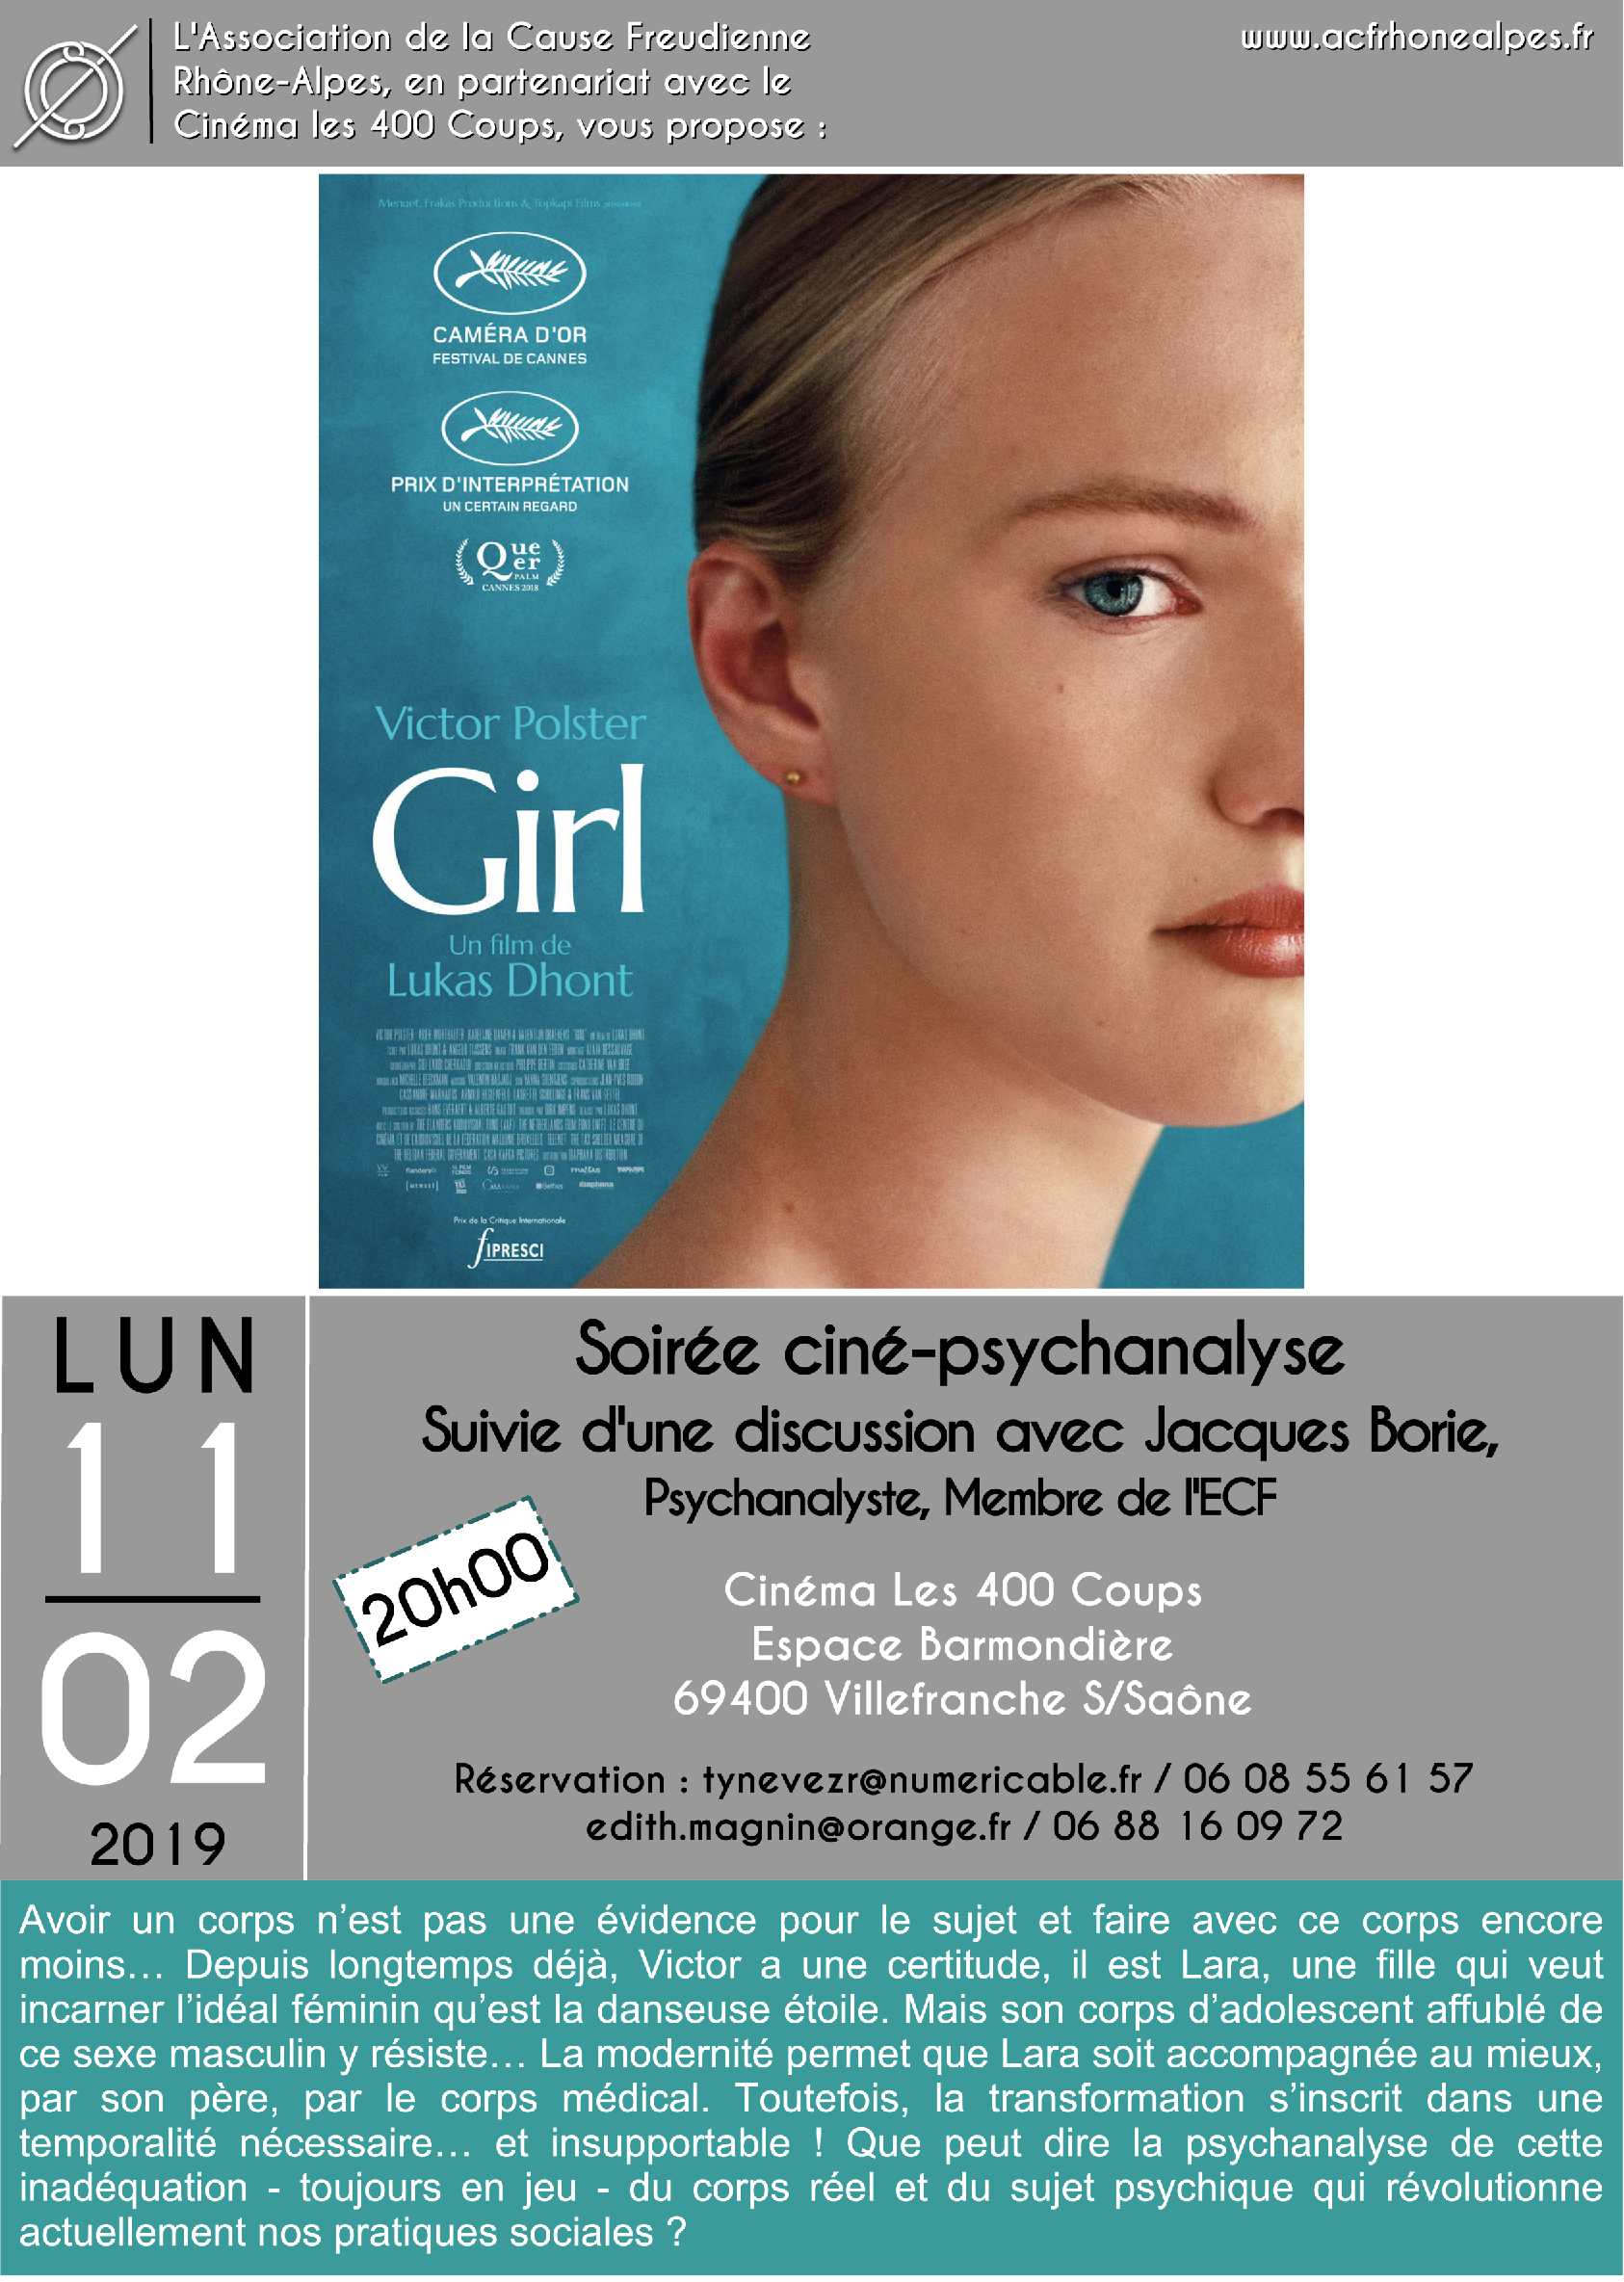 Soirée Ciné psychanalyse à Villefranche